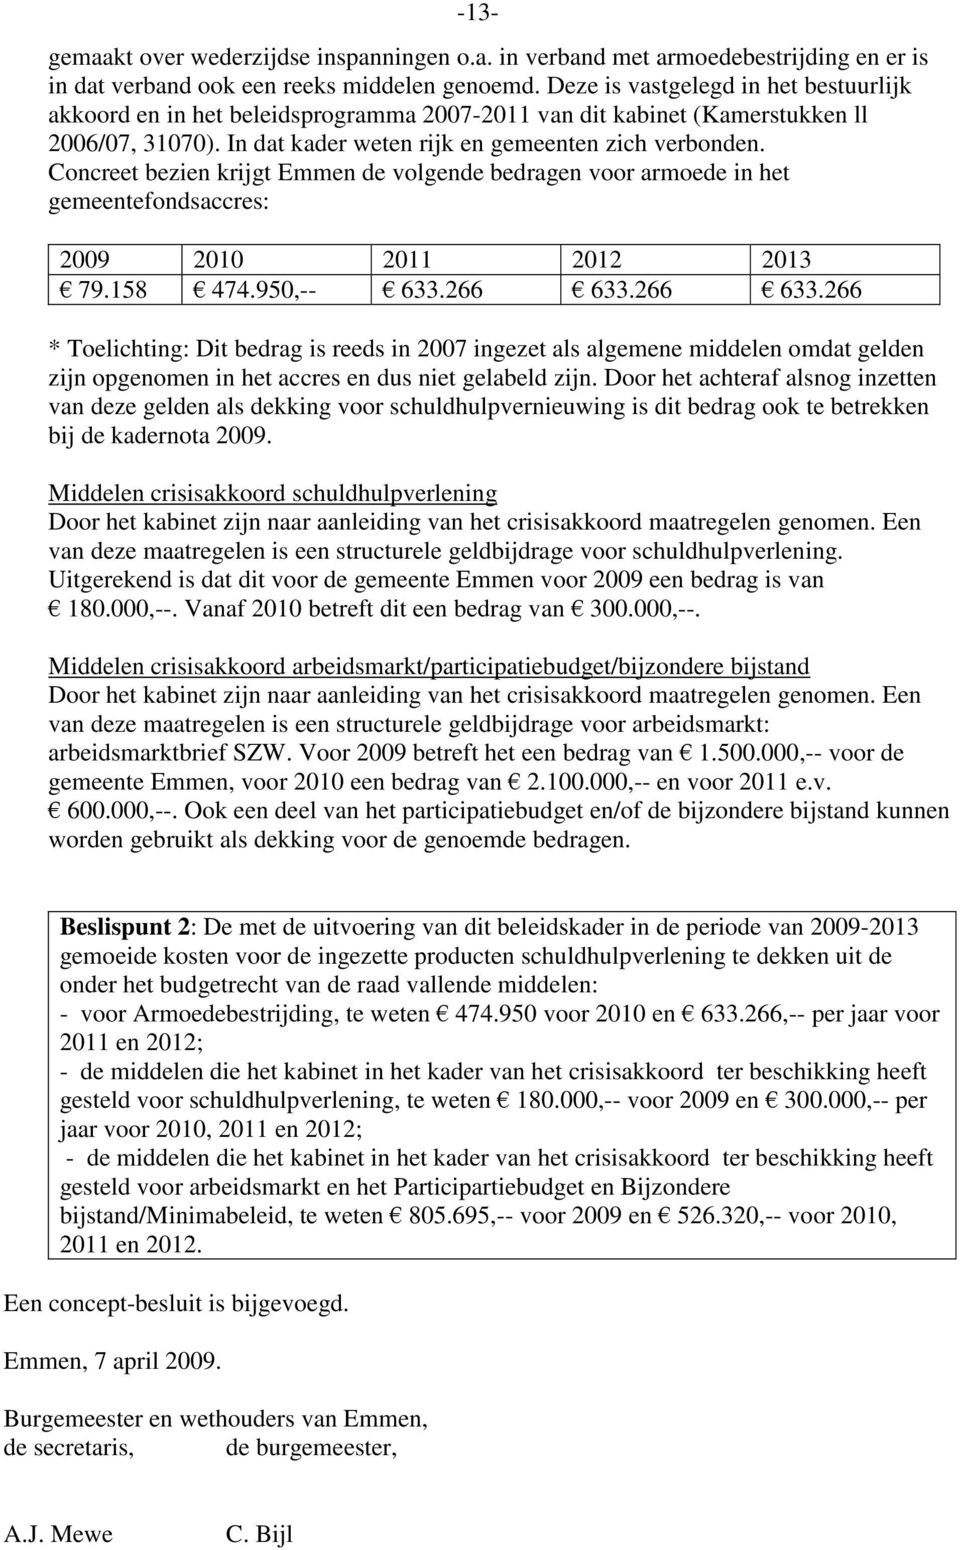 Concreet bezien krijgt Emmen de volgende bedragen voor armoede in het gemeentefondsaccres: 2009 2010 2011 2012 2013 79.158 474.950,-- 633.266 633.